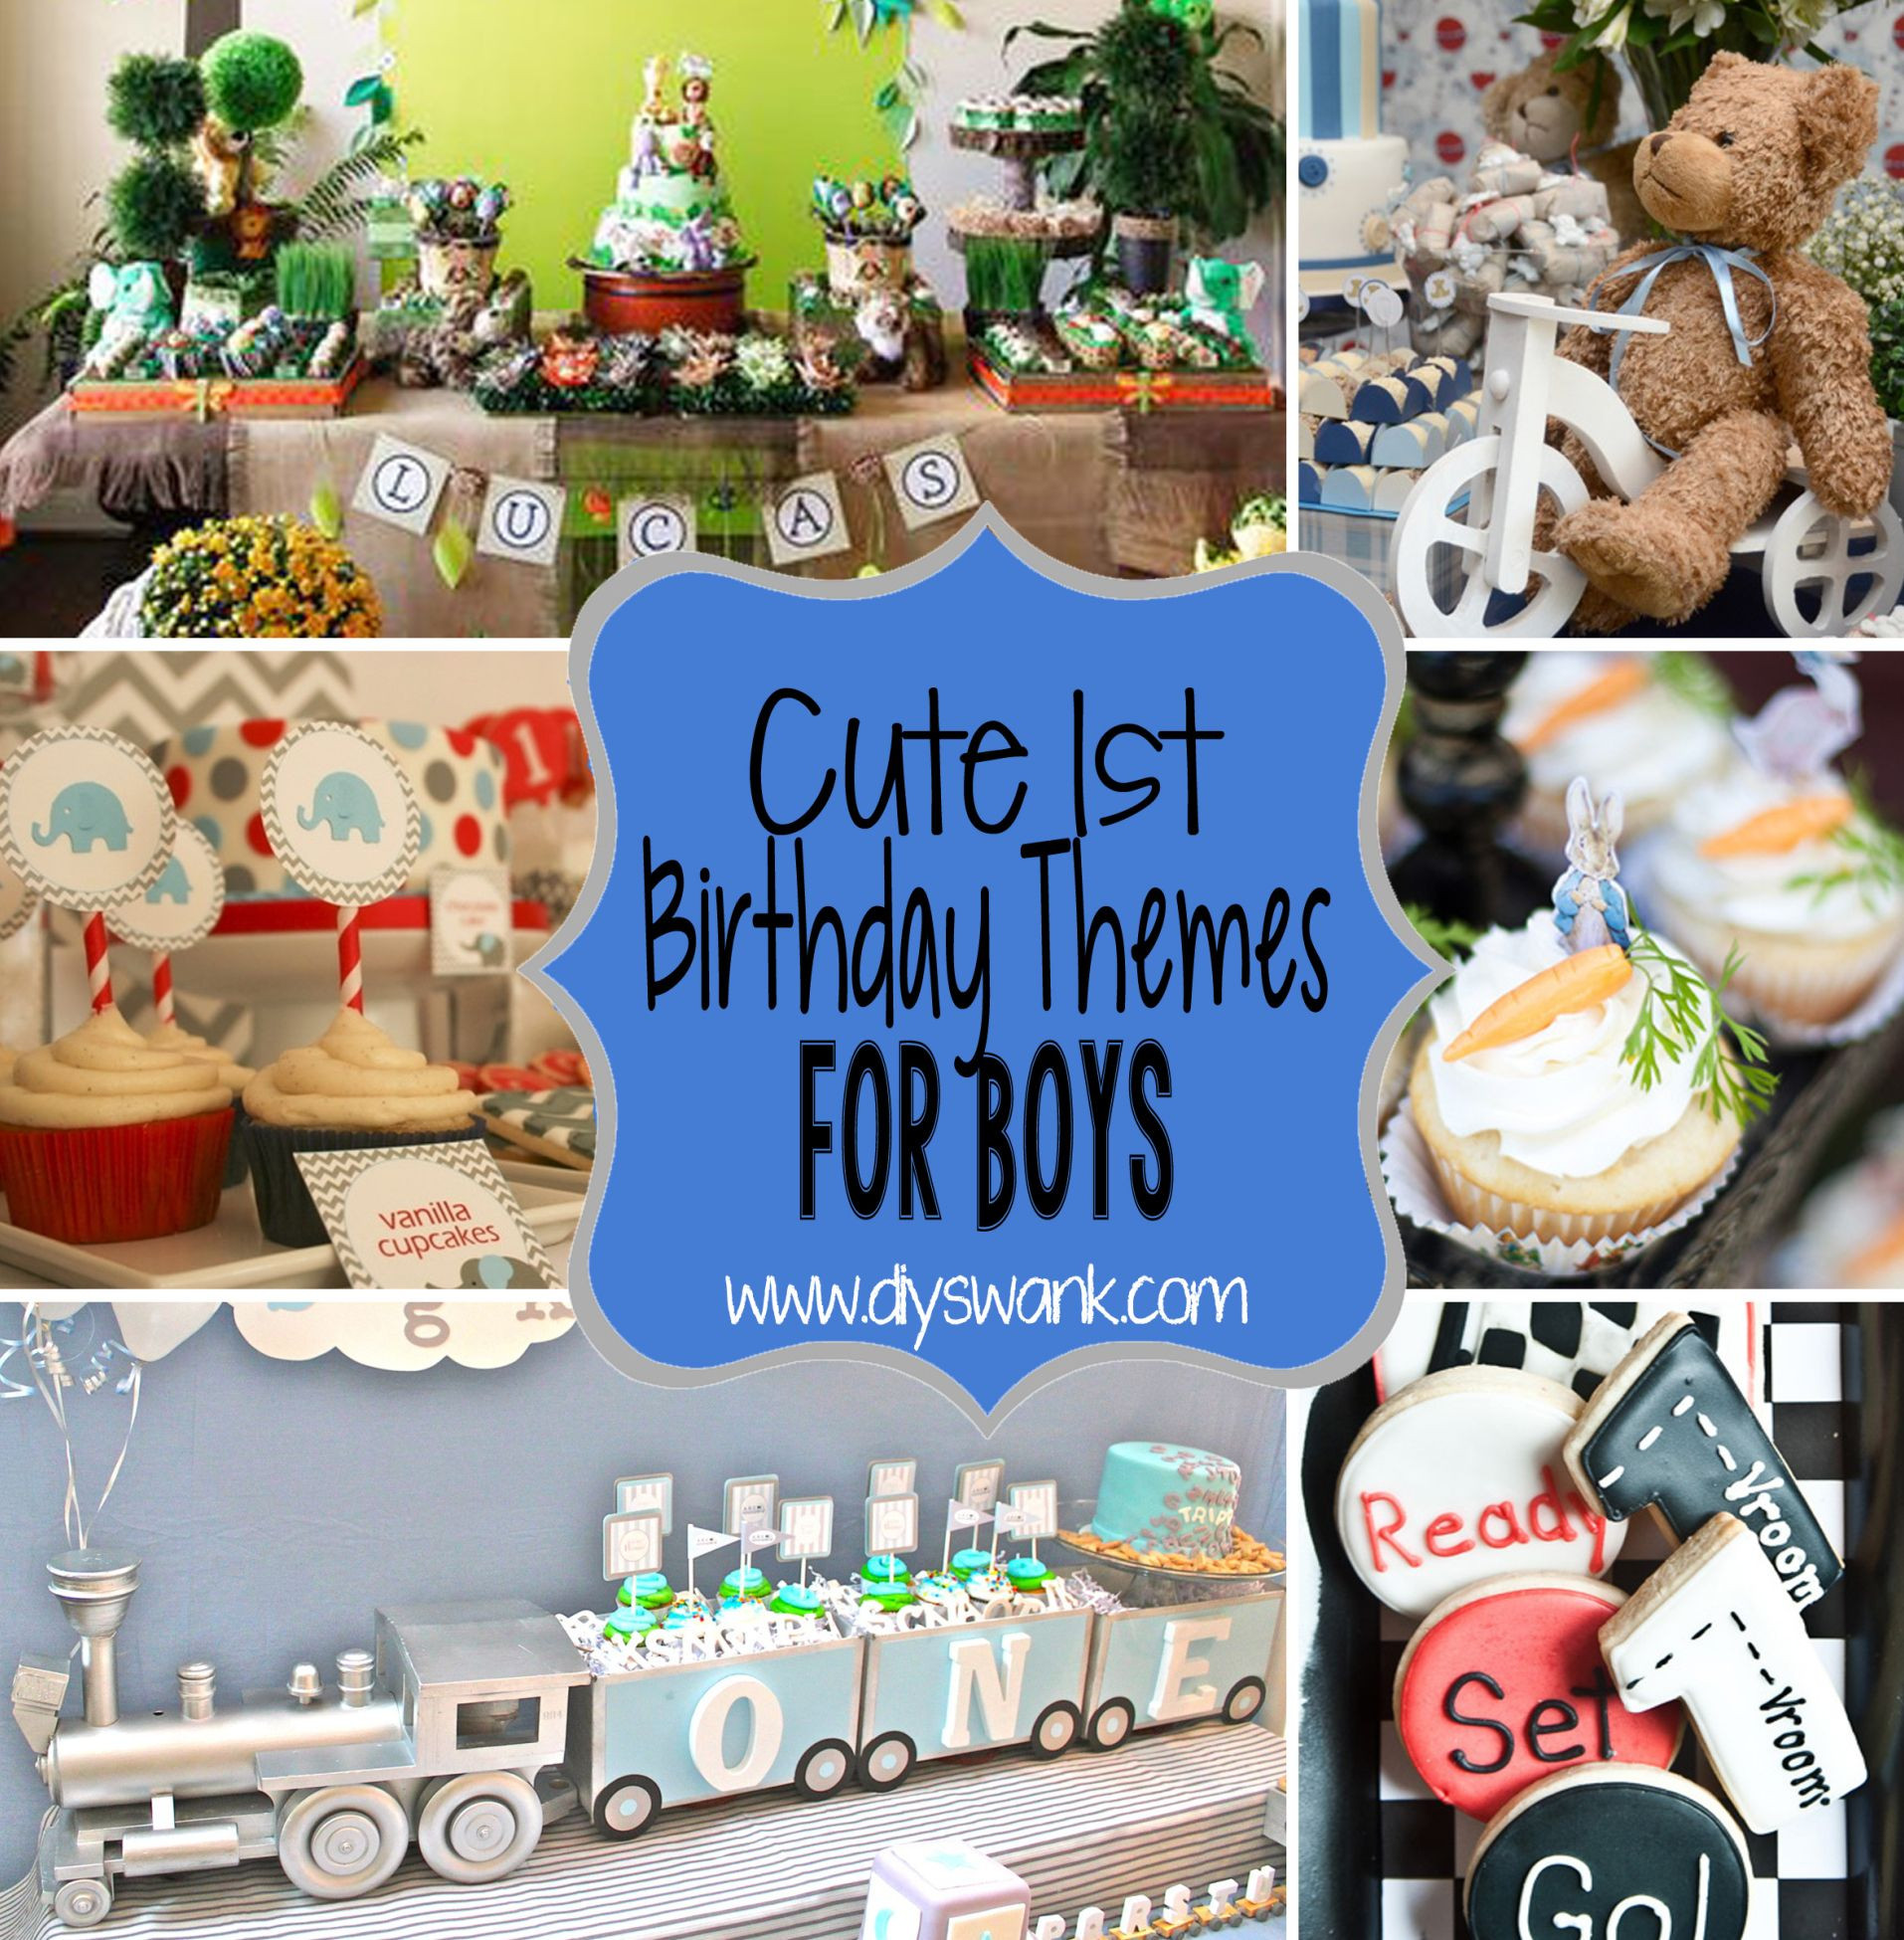 1St Birthday Party Ideas For Boys Themes
 Cute Boy 1st Birthday Party Themes With images